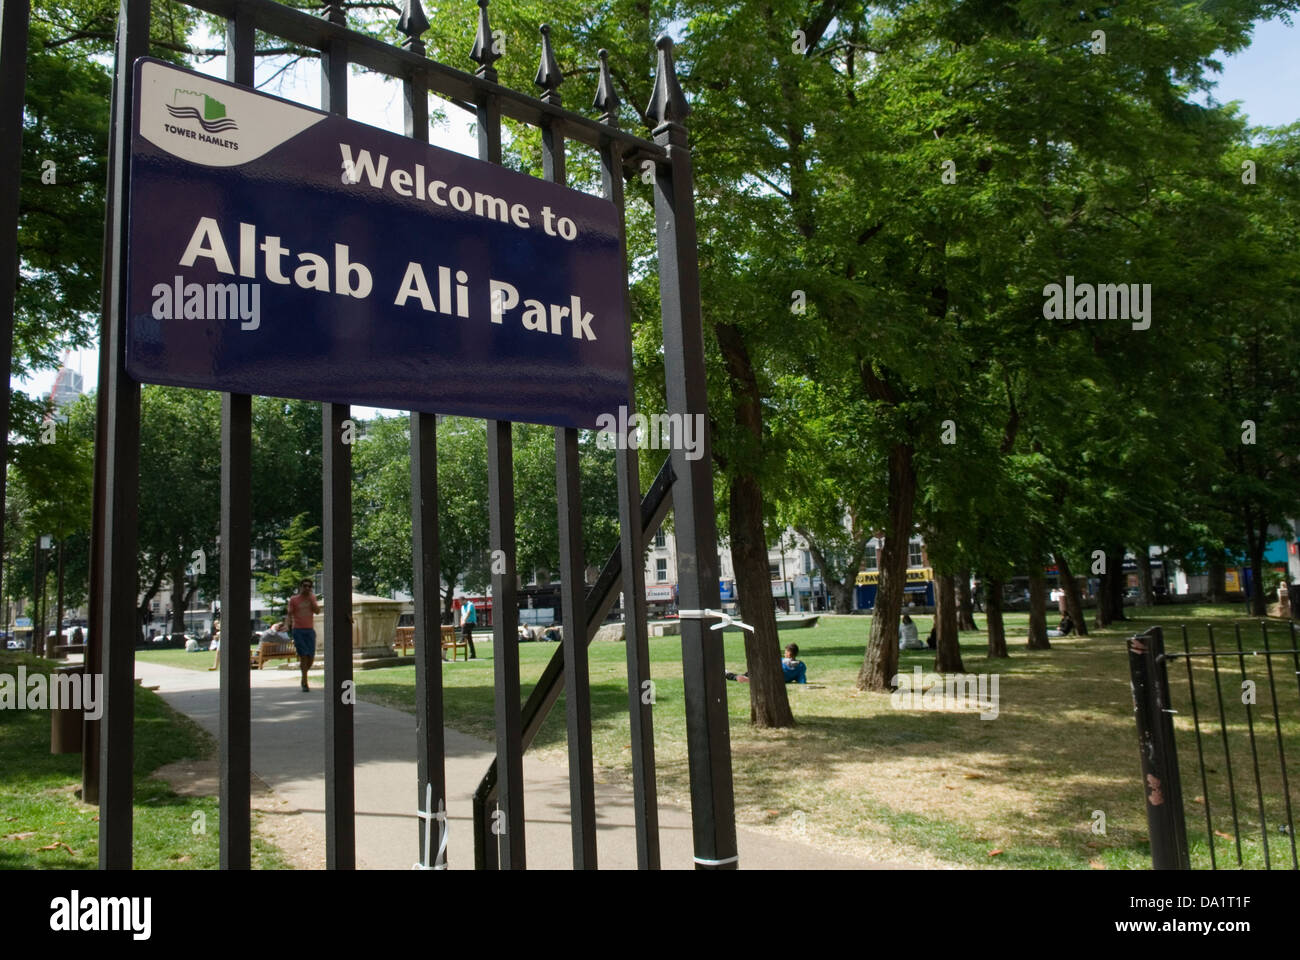 Altab Ali Park Whitechapel Tower Hamlets London UK Whitechapel High Street. HOMER SYKES Stock Photo